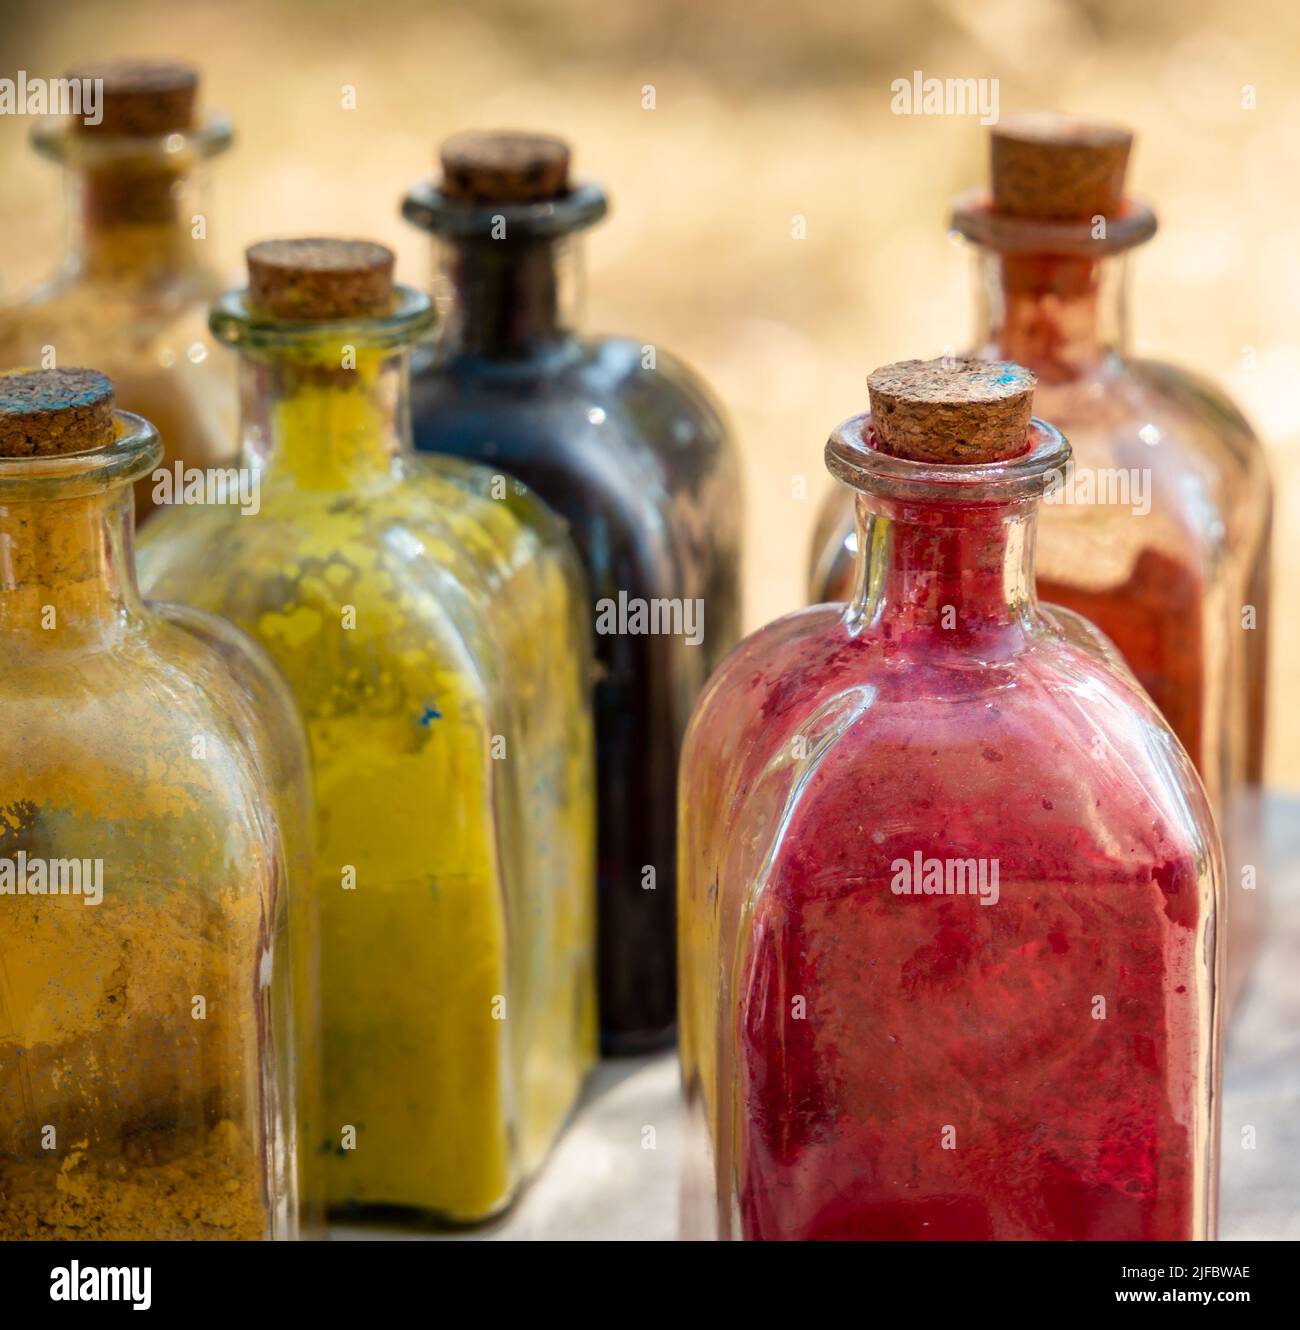 rievocazione storica medievale - bottiglie di vetro con tappo in sughero con colori in polvere all'interno utilizzati per dipingere o colorare vestiti e cuoio Foto Stock